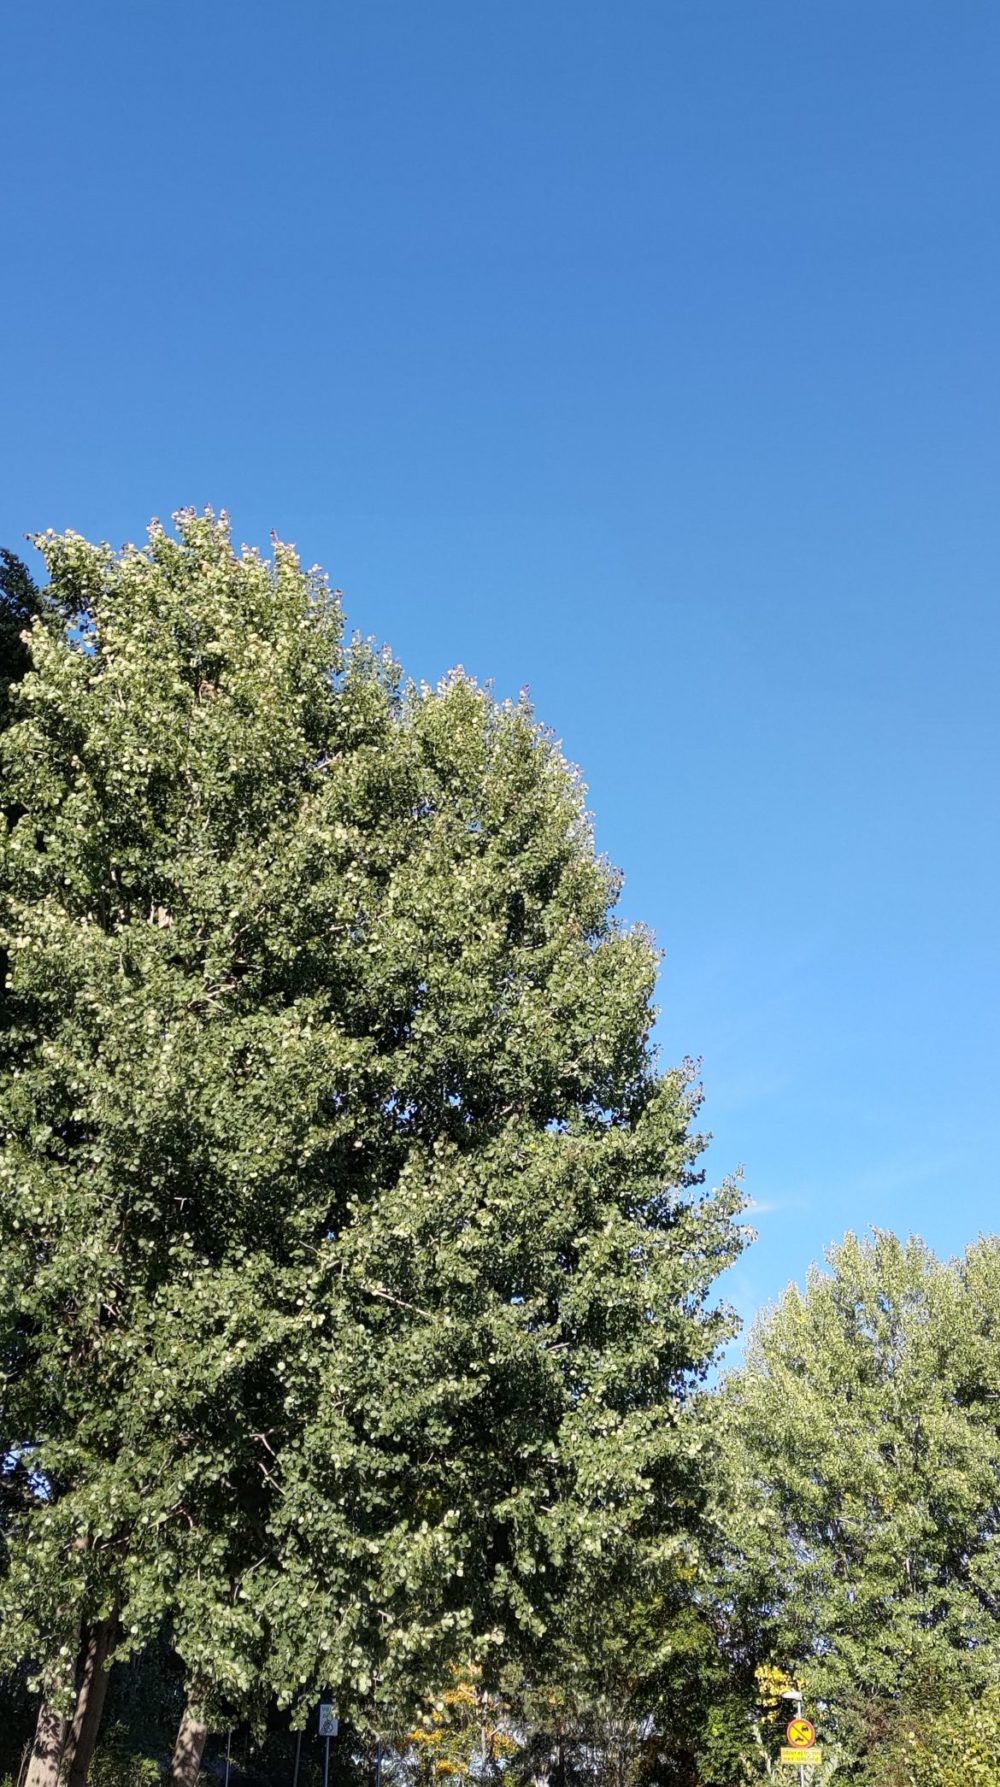 asus zenfone 8 blå himmel övergång till träd och grönt